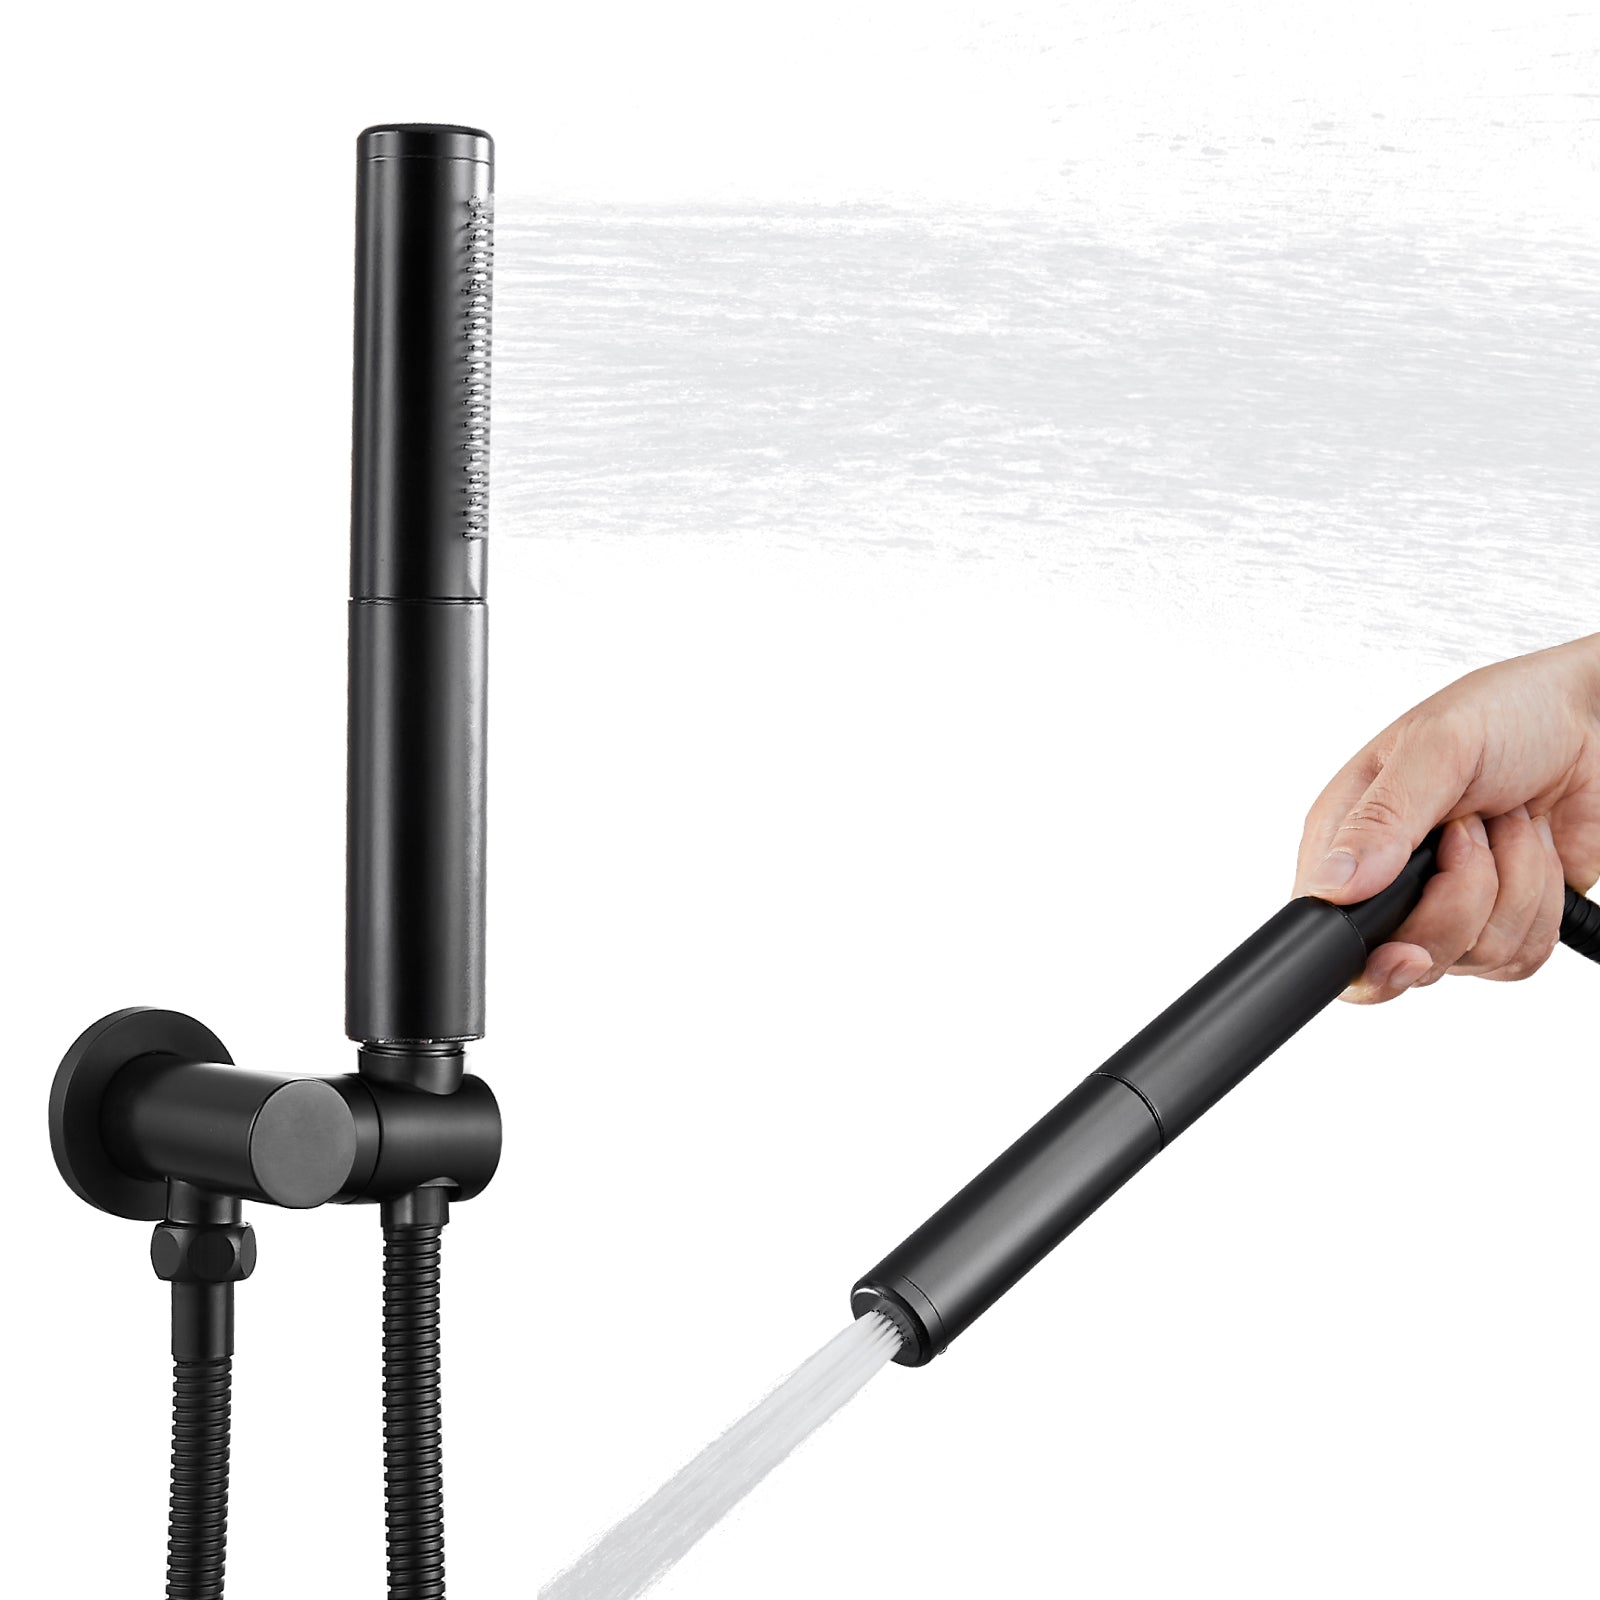 Heyalan Brass 2 in1 Function Handheld Spray Hand Shower High Pressure 7.9 Inch Shower Head High Flow Handheld Sprinklert Shower Wand with Shower Hose and Hand Shower Holder